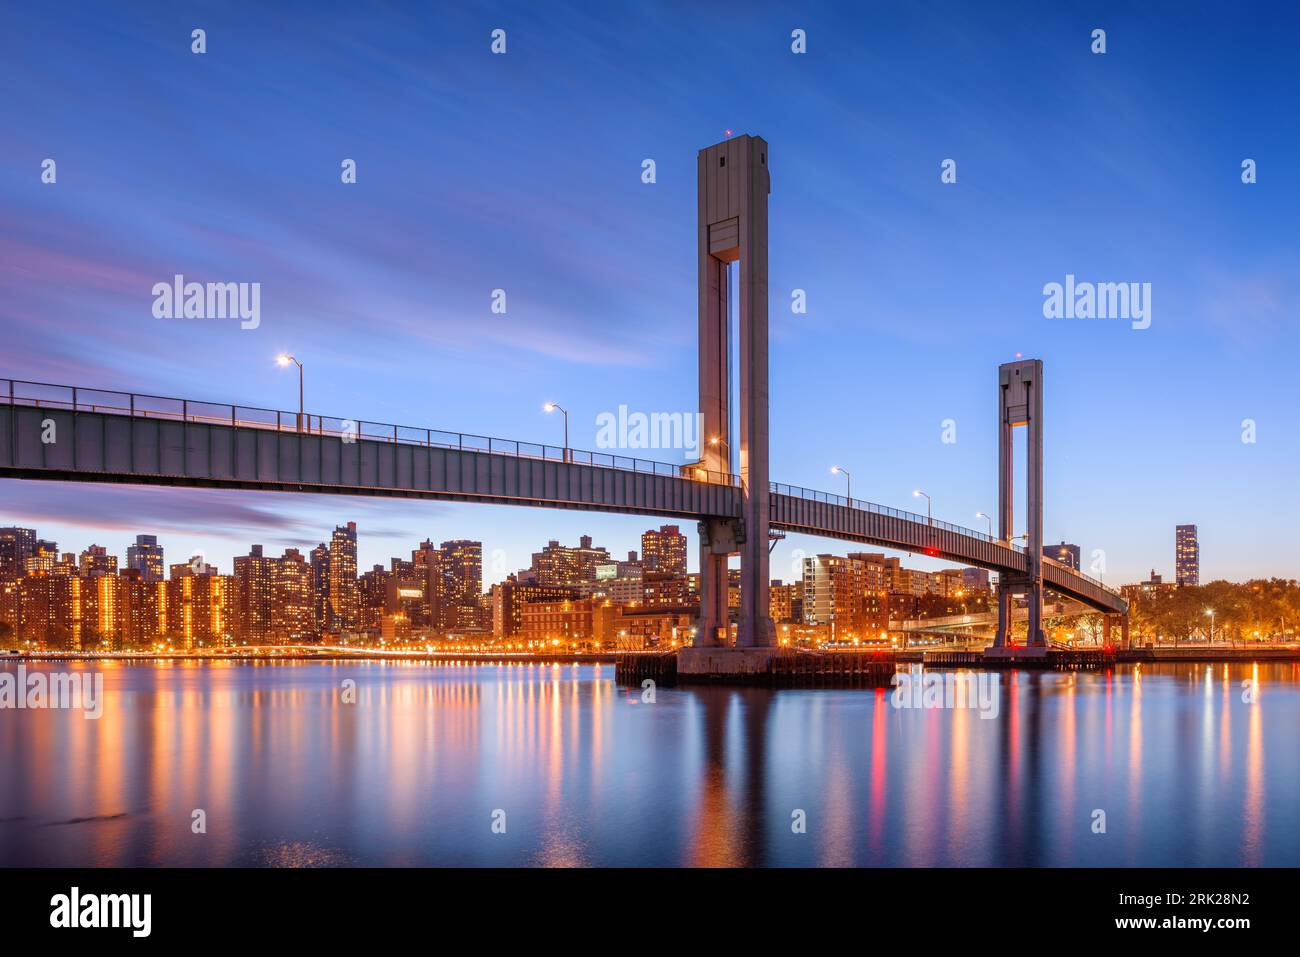 Isola di reparti ponte che attraversa il fiume Harlem tra Manhattan Island e reparti di degenza Island in New York City. Foto Stock